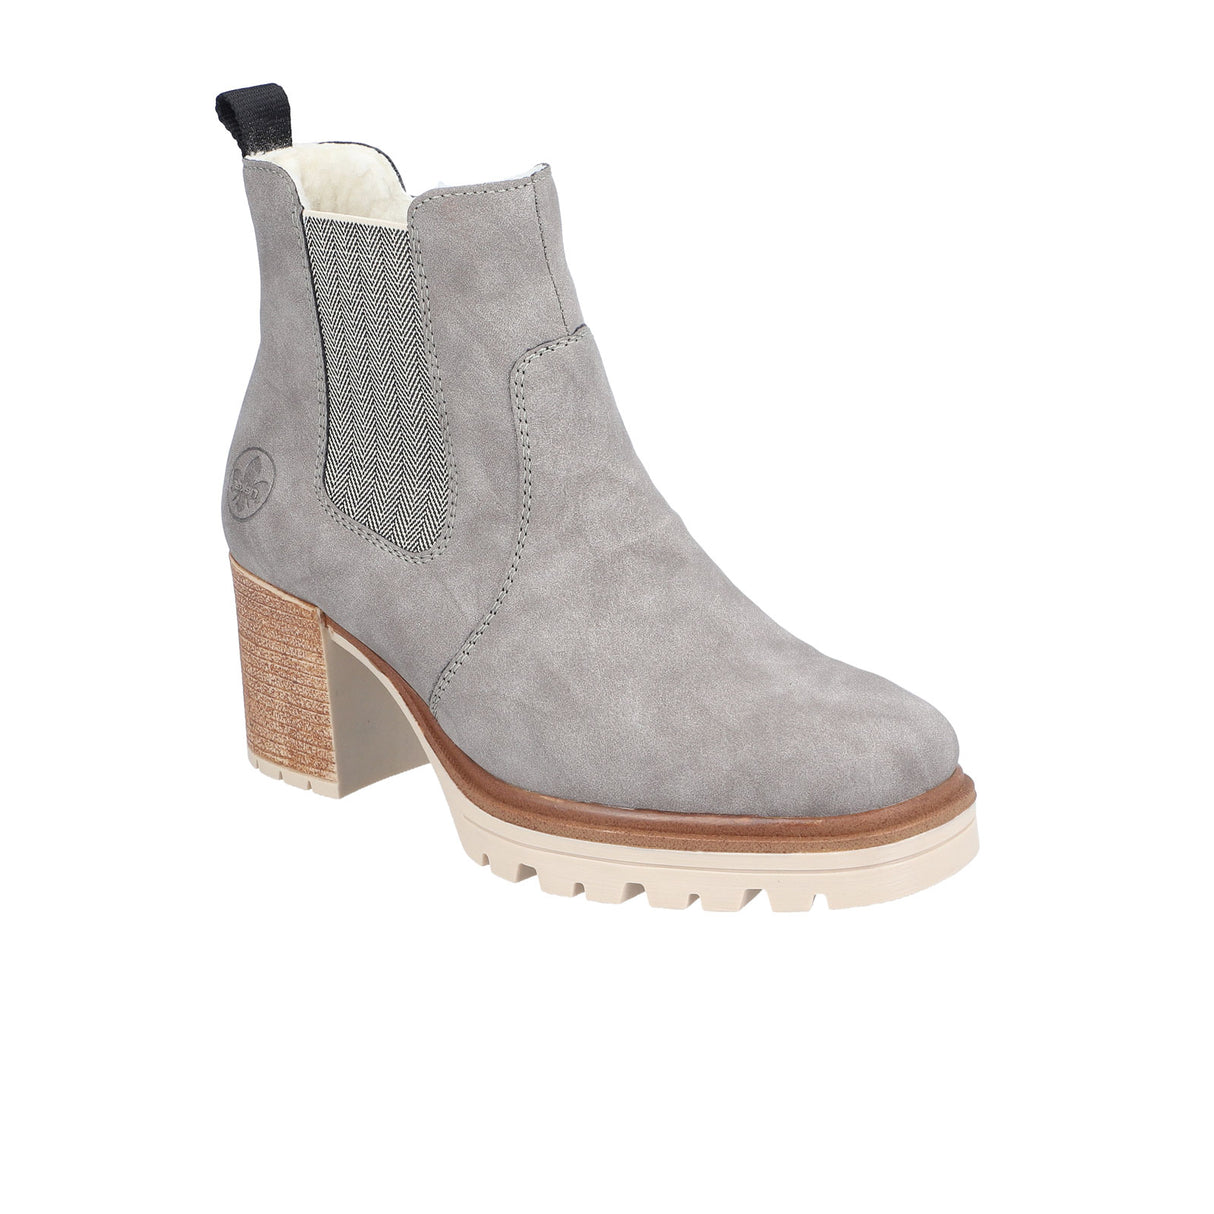 Rieker Sandra Y9071 Heeled Chelsea Boot (Women) - Grey/Leinen Boots - Fashion - Chelsea Boot - The Heel Shoe Fitters